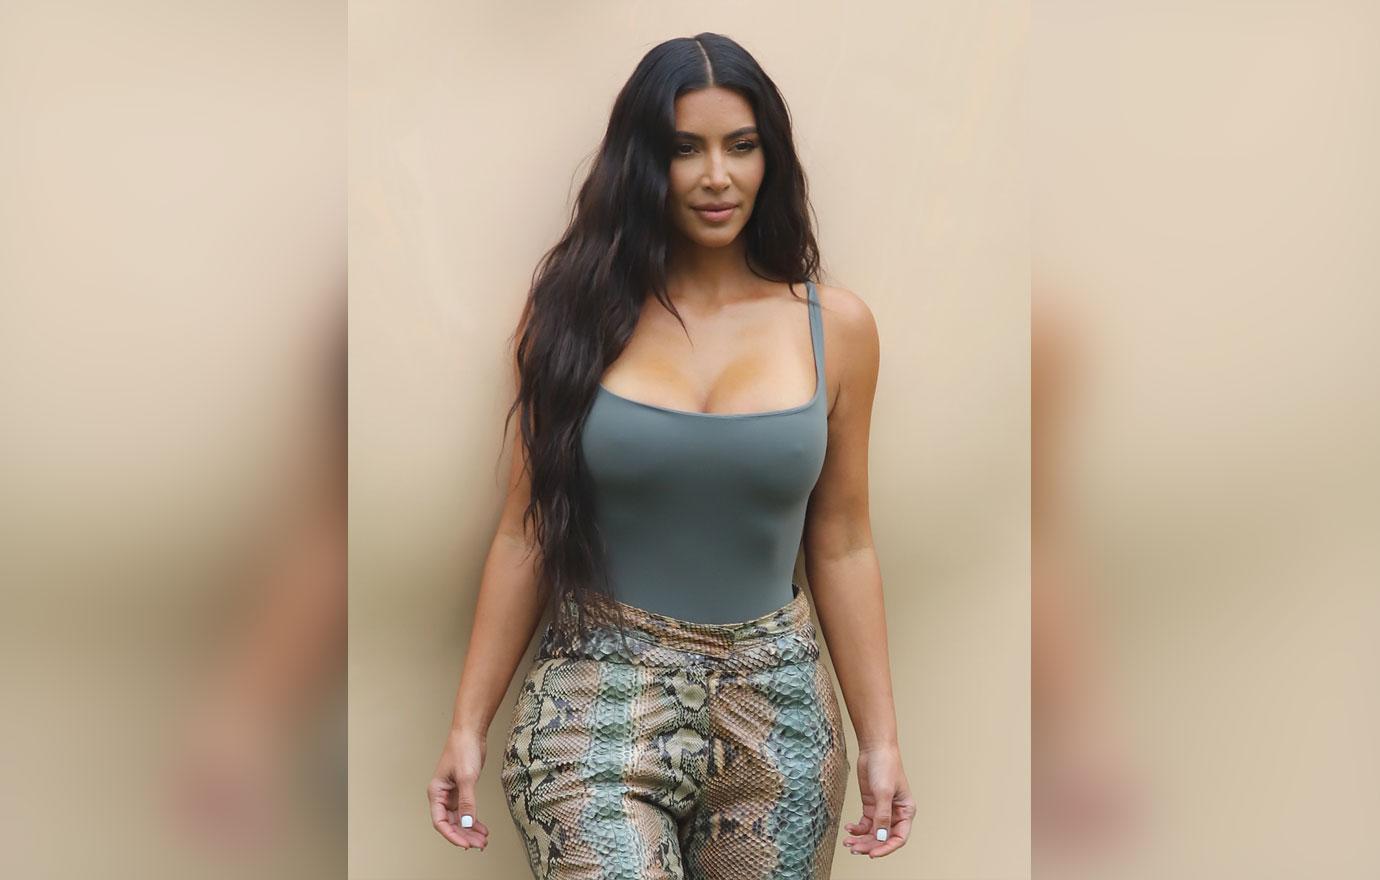 Kim Kardashian Skims Pop Up Shop at the Grove April 7, 2021 – Star Style